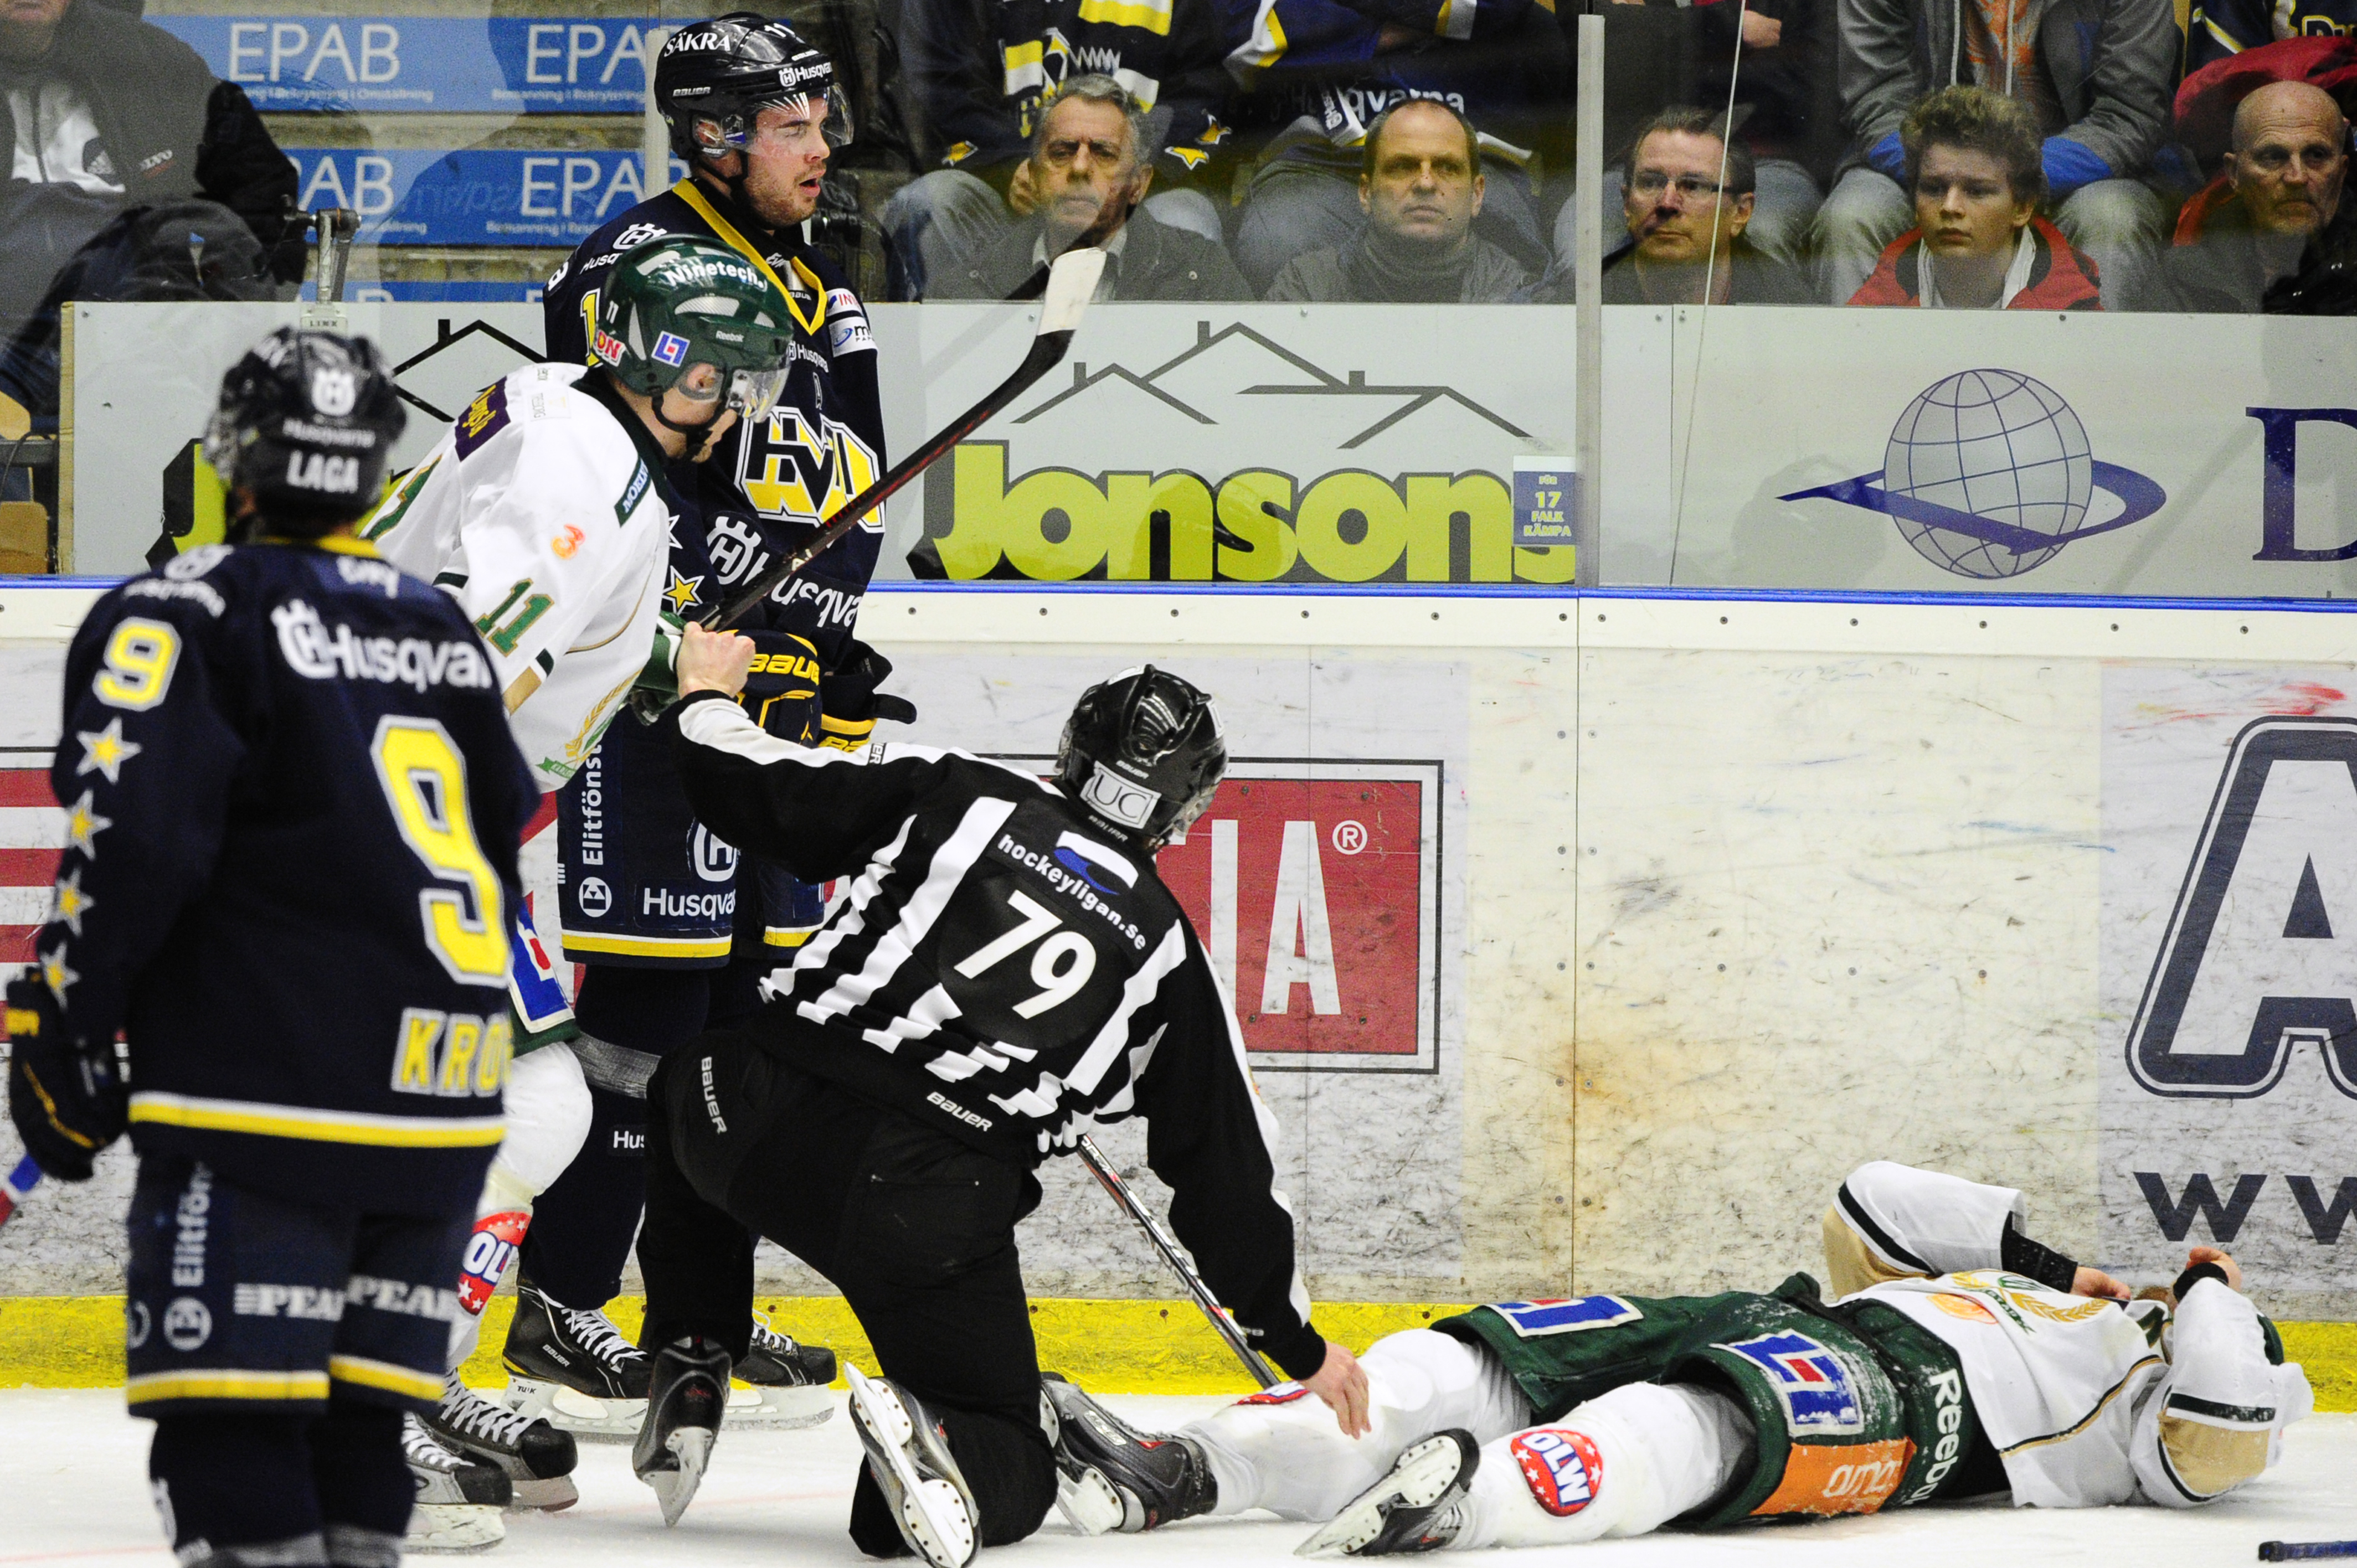 HV71:s Joensuu sänkte Sanny Lindström med klubban och avgjorde därmed matchen - för Färjestad.